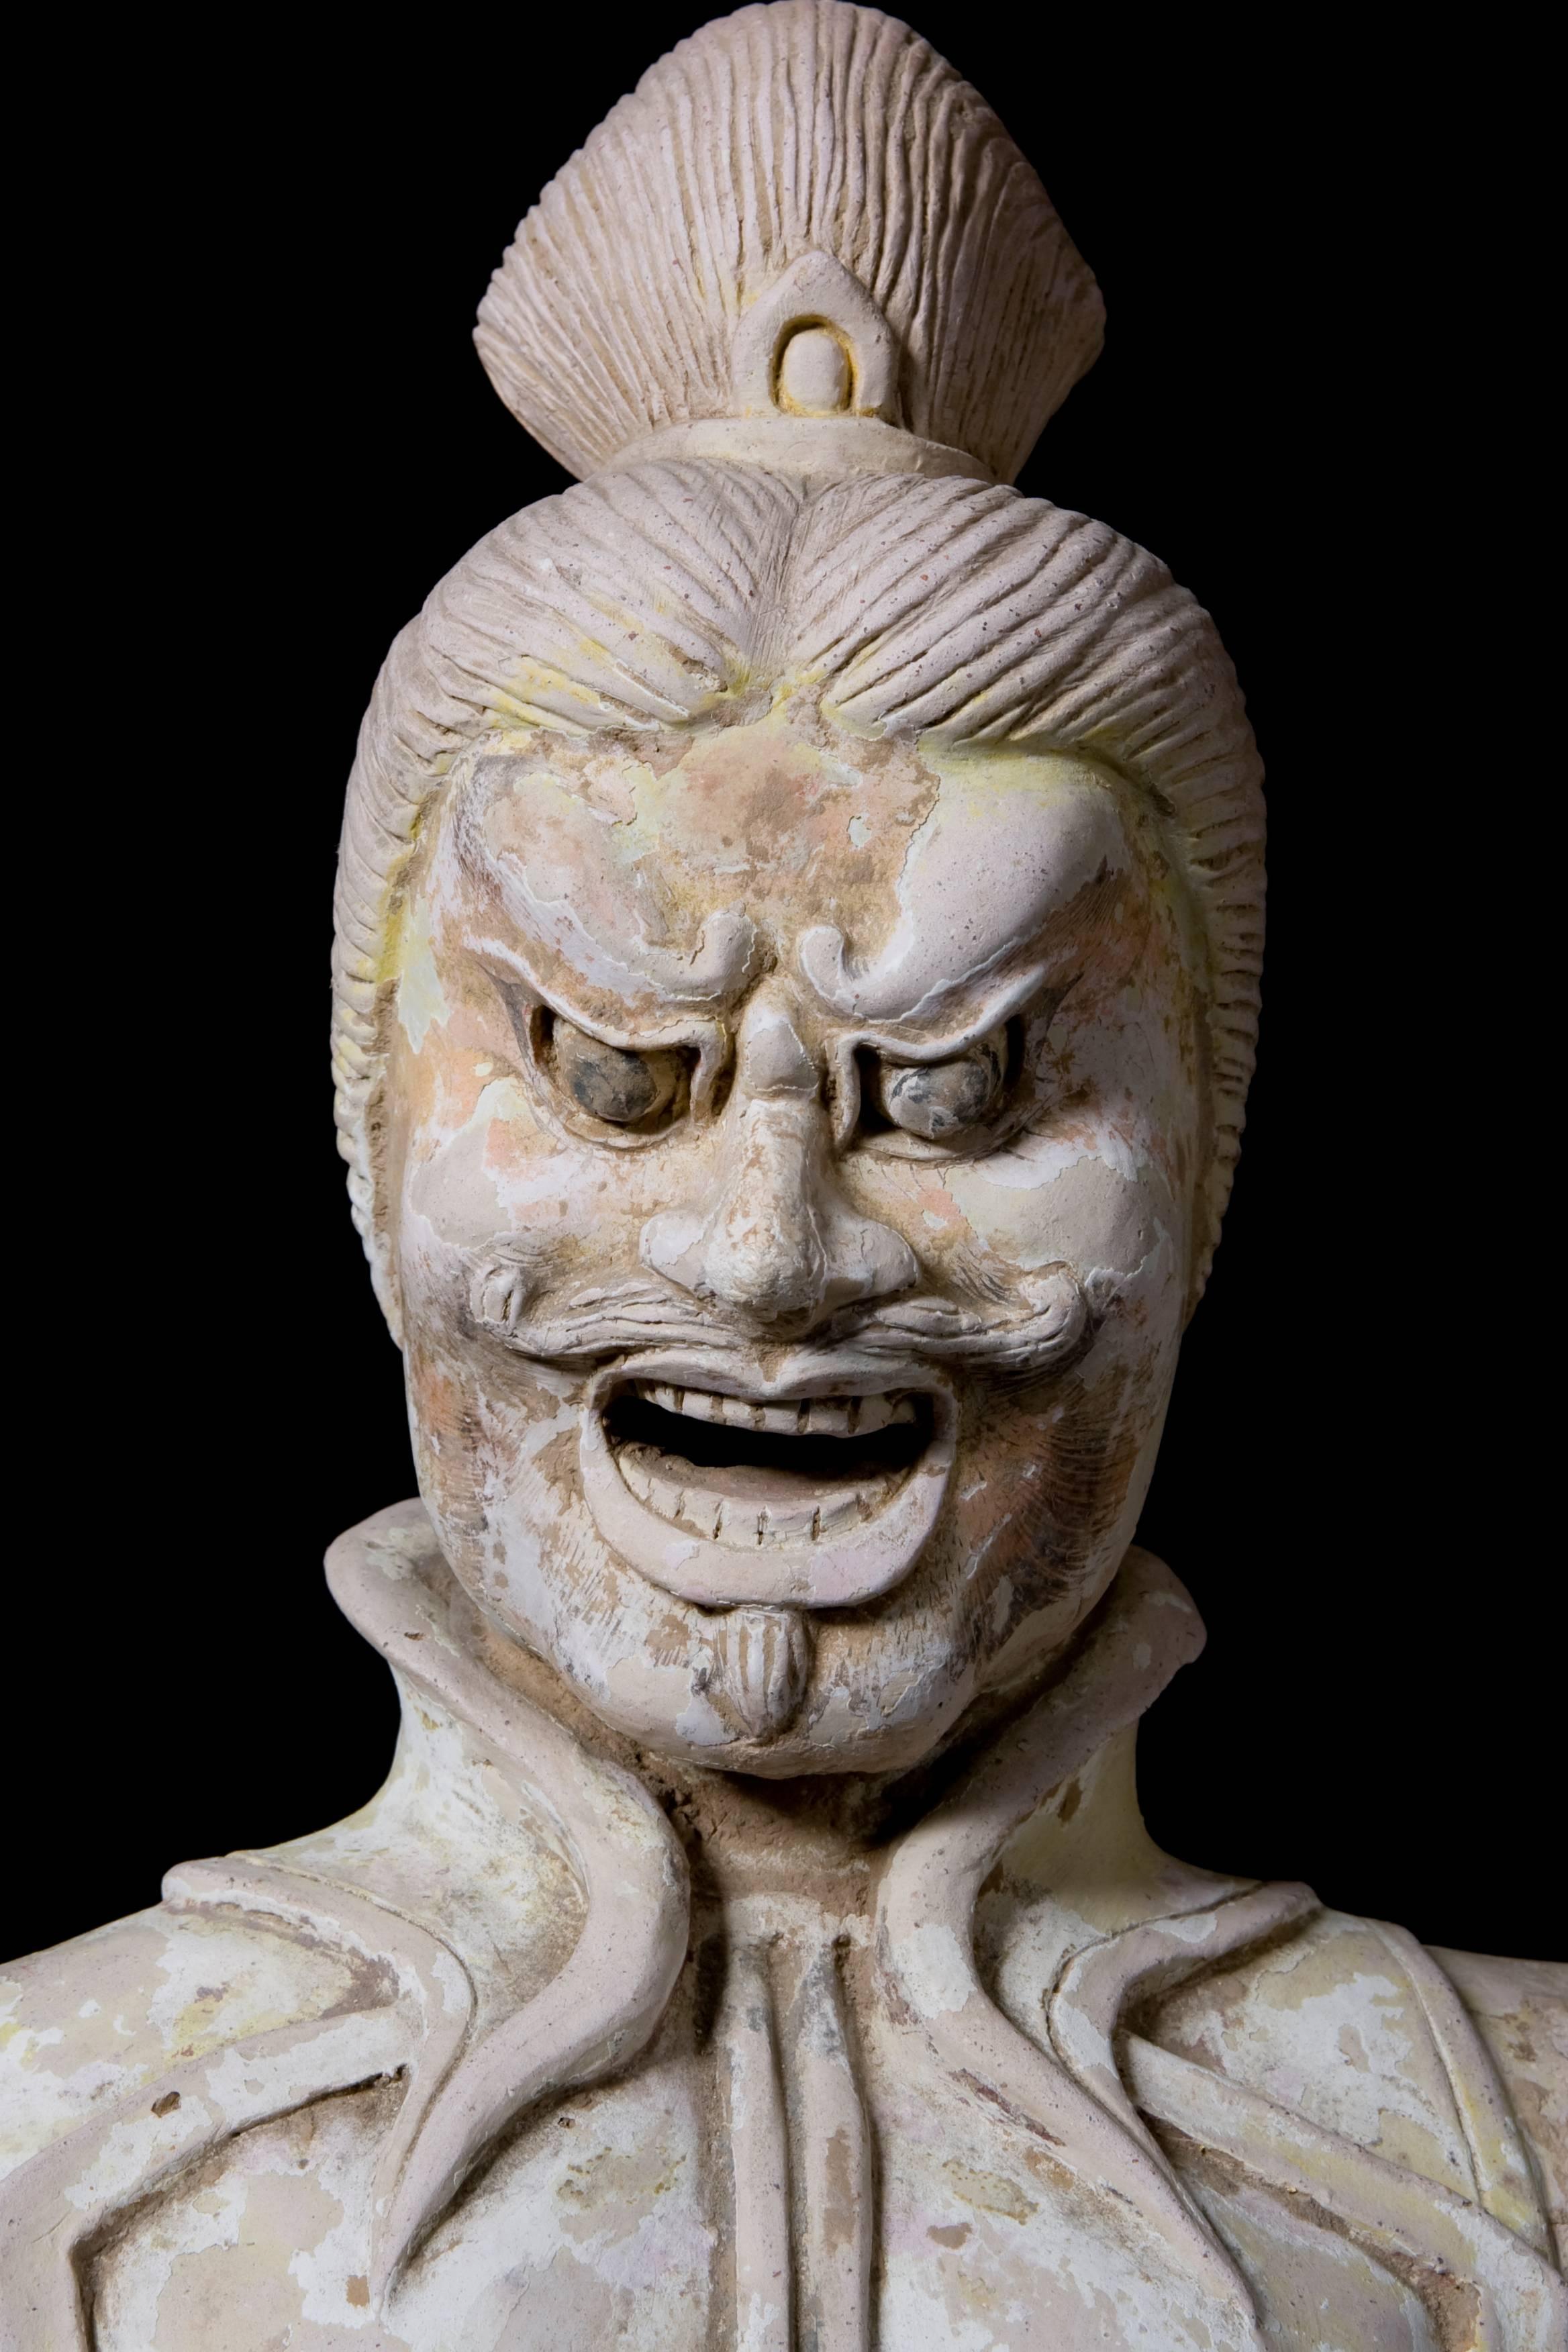 Imposante figure de Lokapala debout dans une pose menaçante. Terracotta avec des traces d'anciens pigments de couleur. Chine, dynastie Tang (618-907 AD.) Pièce de musée.

Les Lokapalas, selon la doctrine bouddhiste, sont des protecteurs de Bouddha